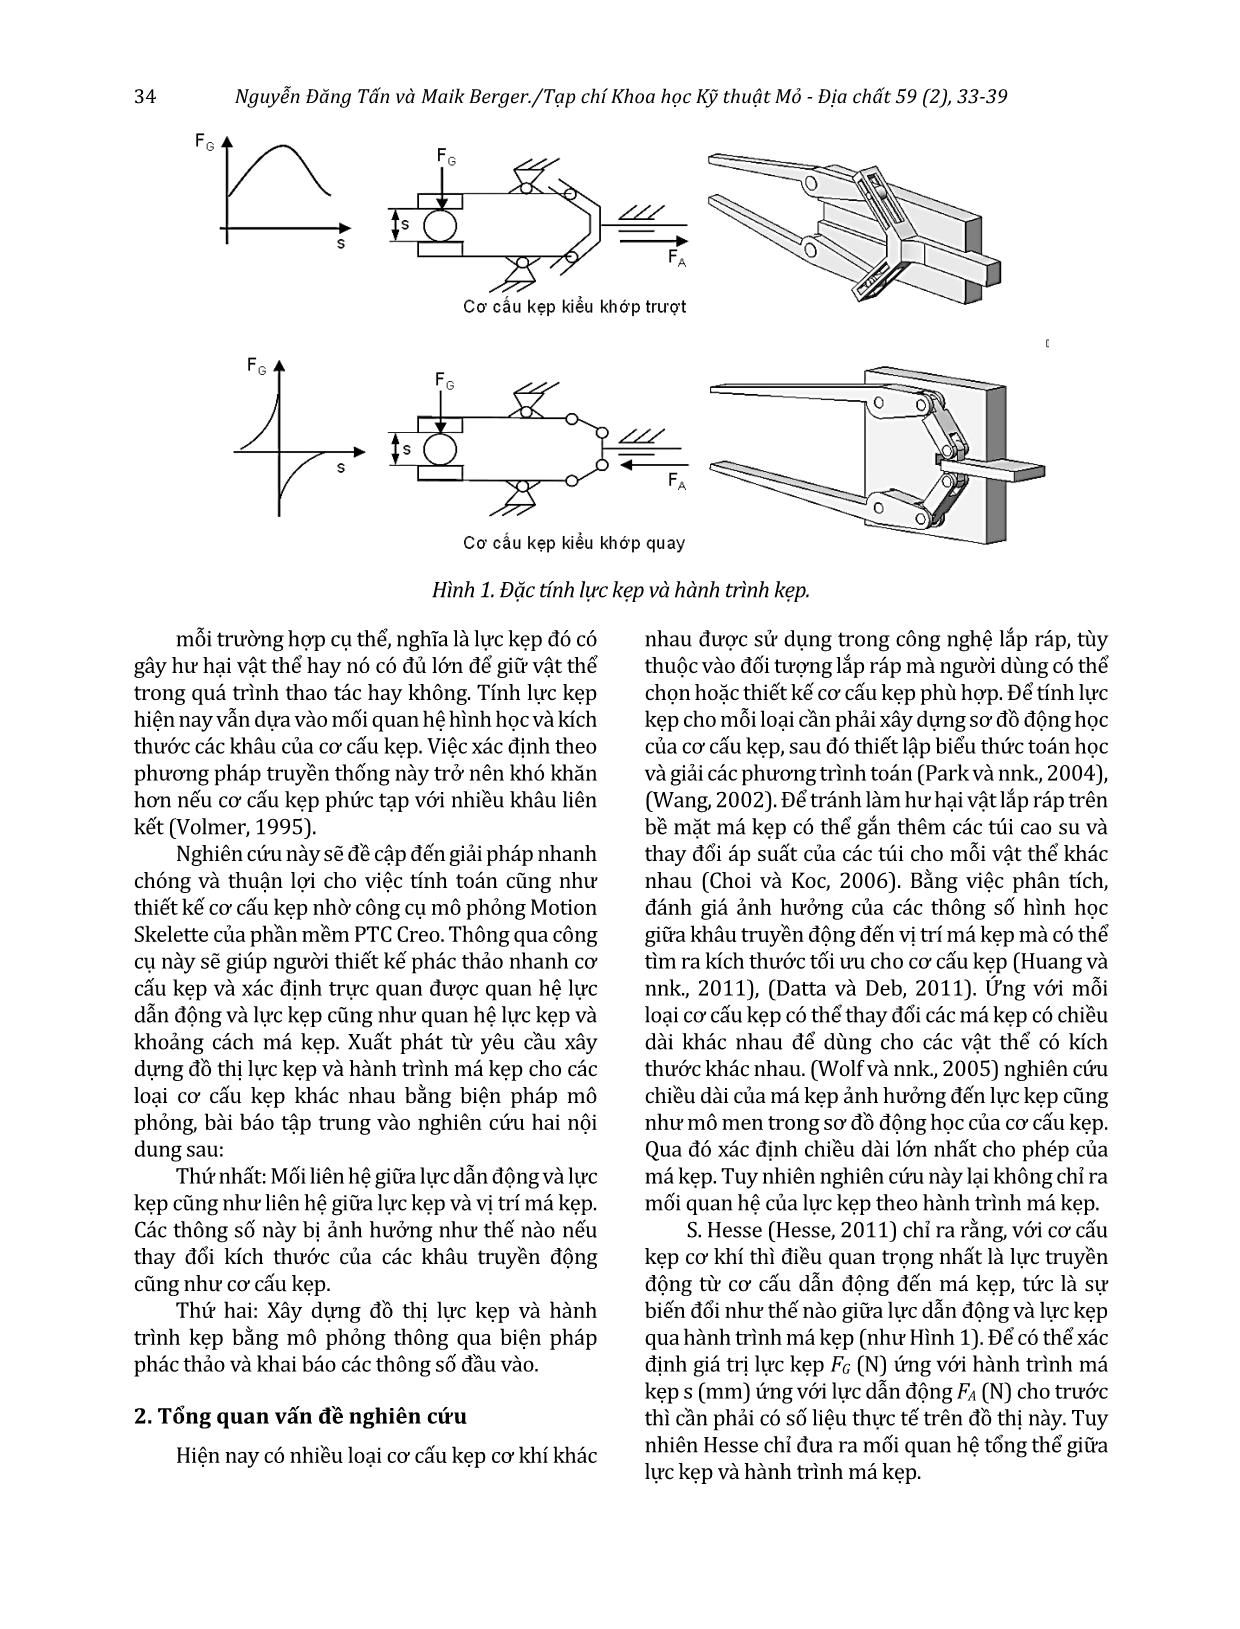 Phương pháp mô phỏng để xây dựng đồ thị lực kẹp của cơ cấu kẹp cơ khí theo khoảng cách má kẹp trang 2